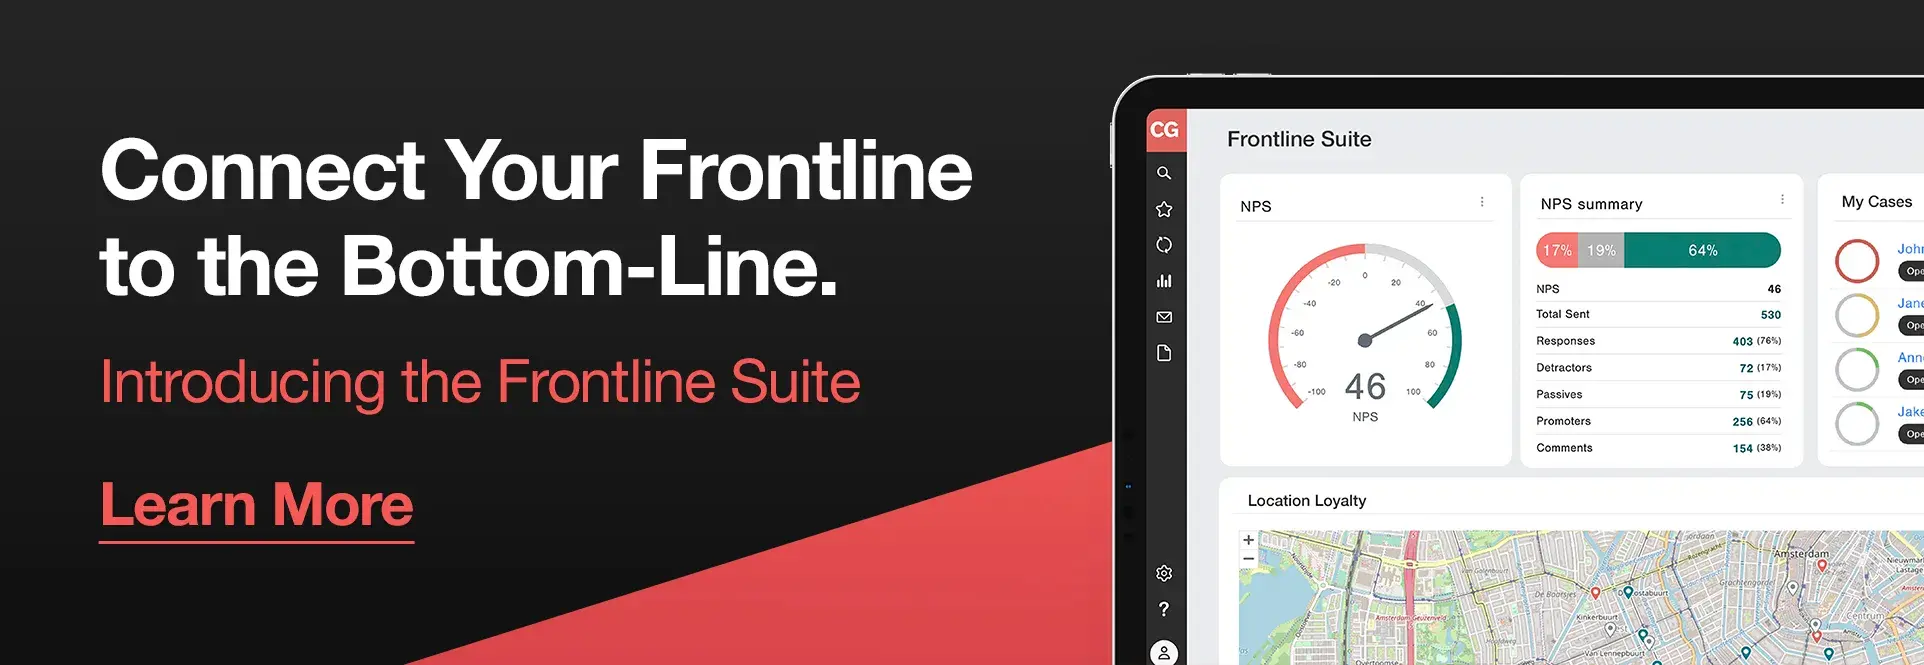 CustomerGauge Frontline Suite CTA